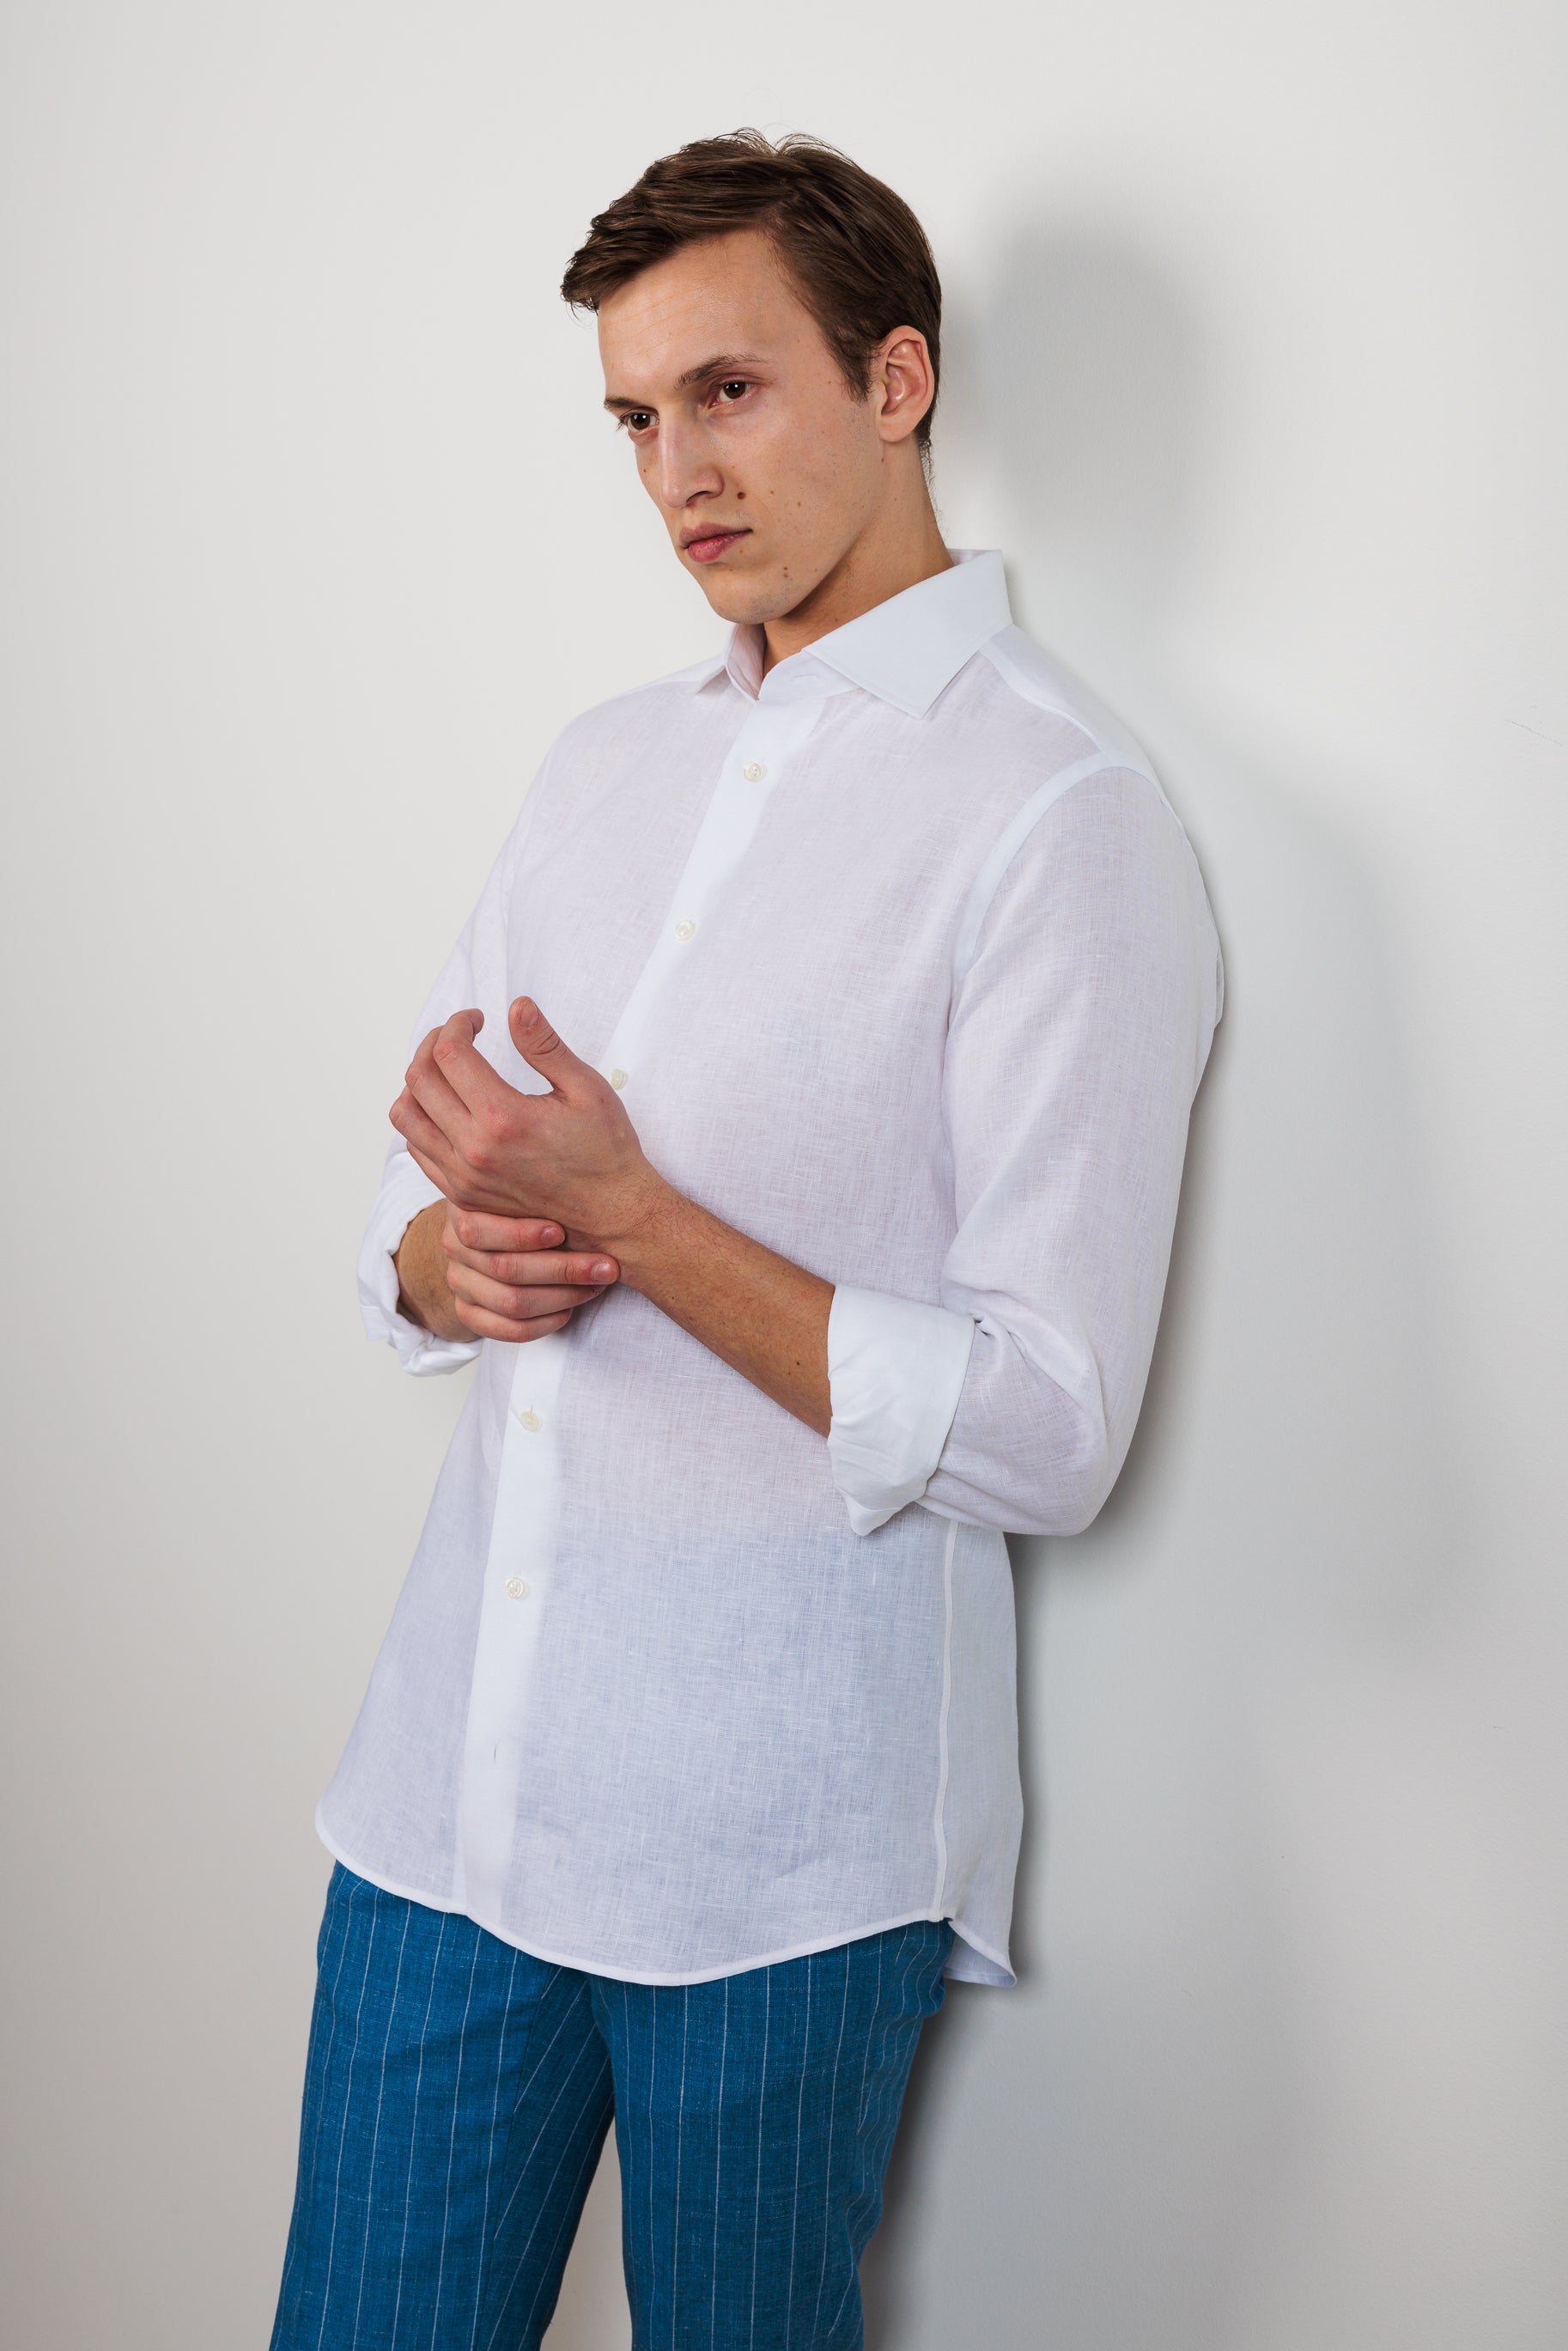 Shirt "PORTOFINO" / Fine Linen by Solbiati of Loro Piana